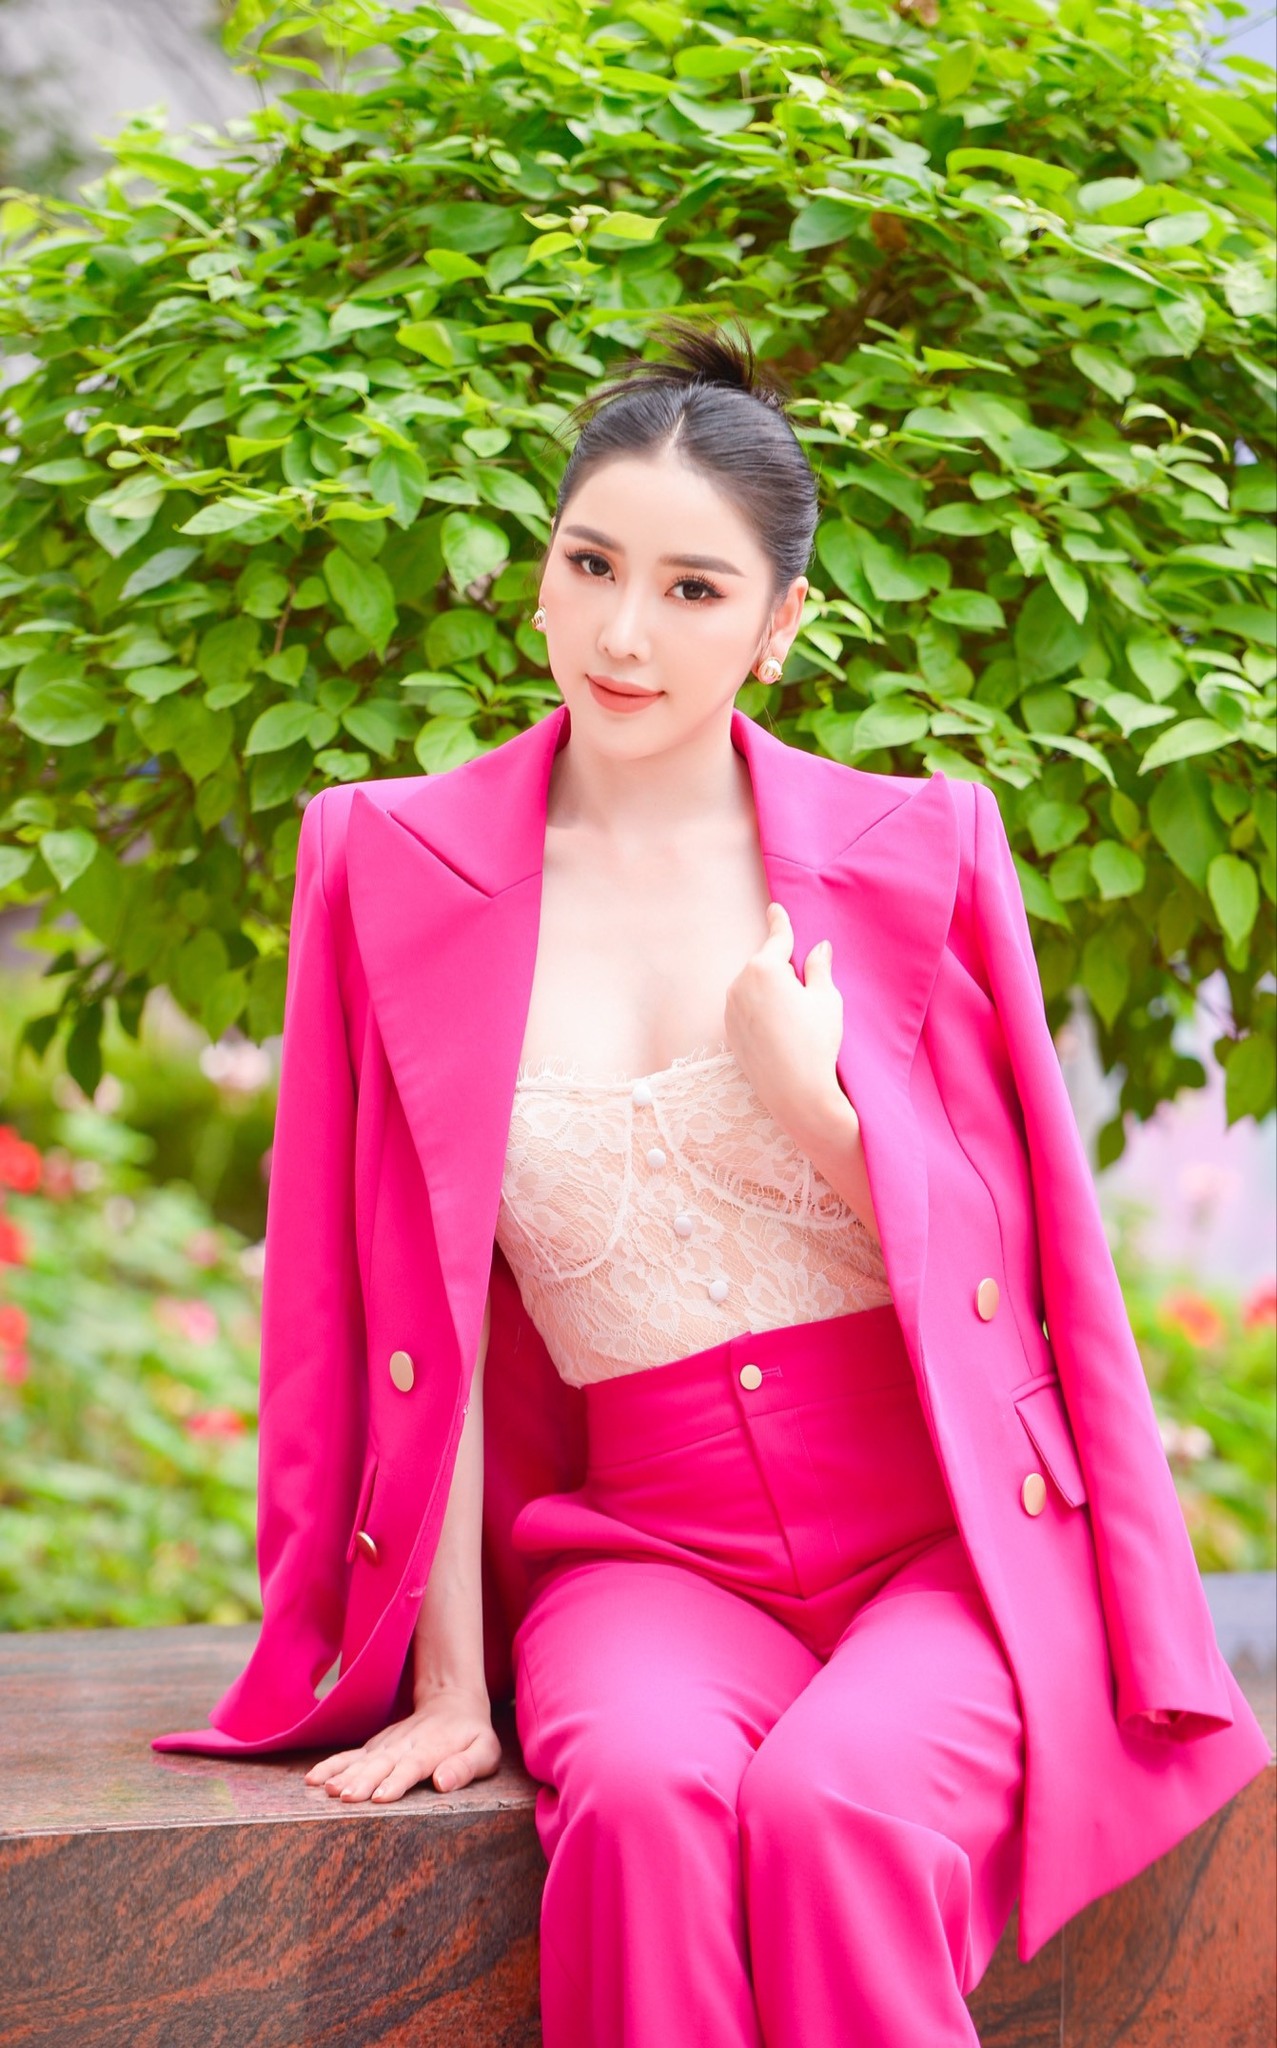 Hoa hậu Trịnh Thanh Hồng là ai khiến netizen đổ xô tìm kiếm? - ảnh 4